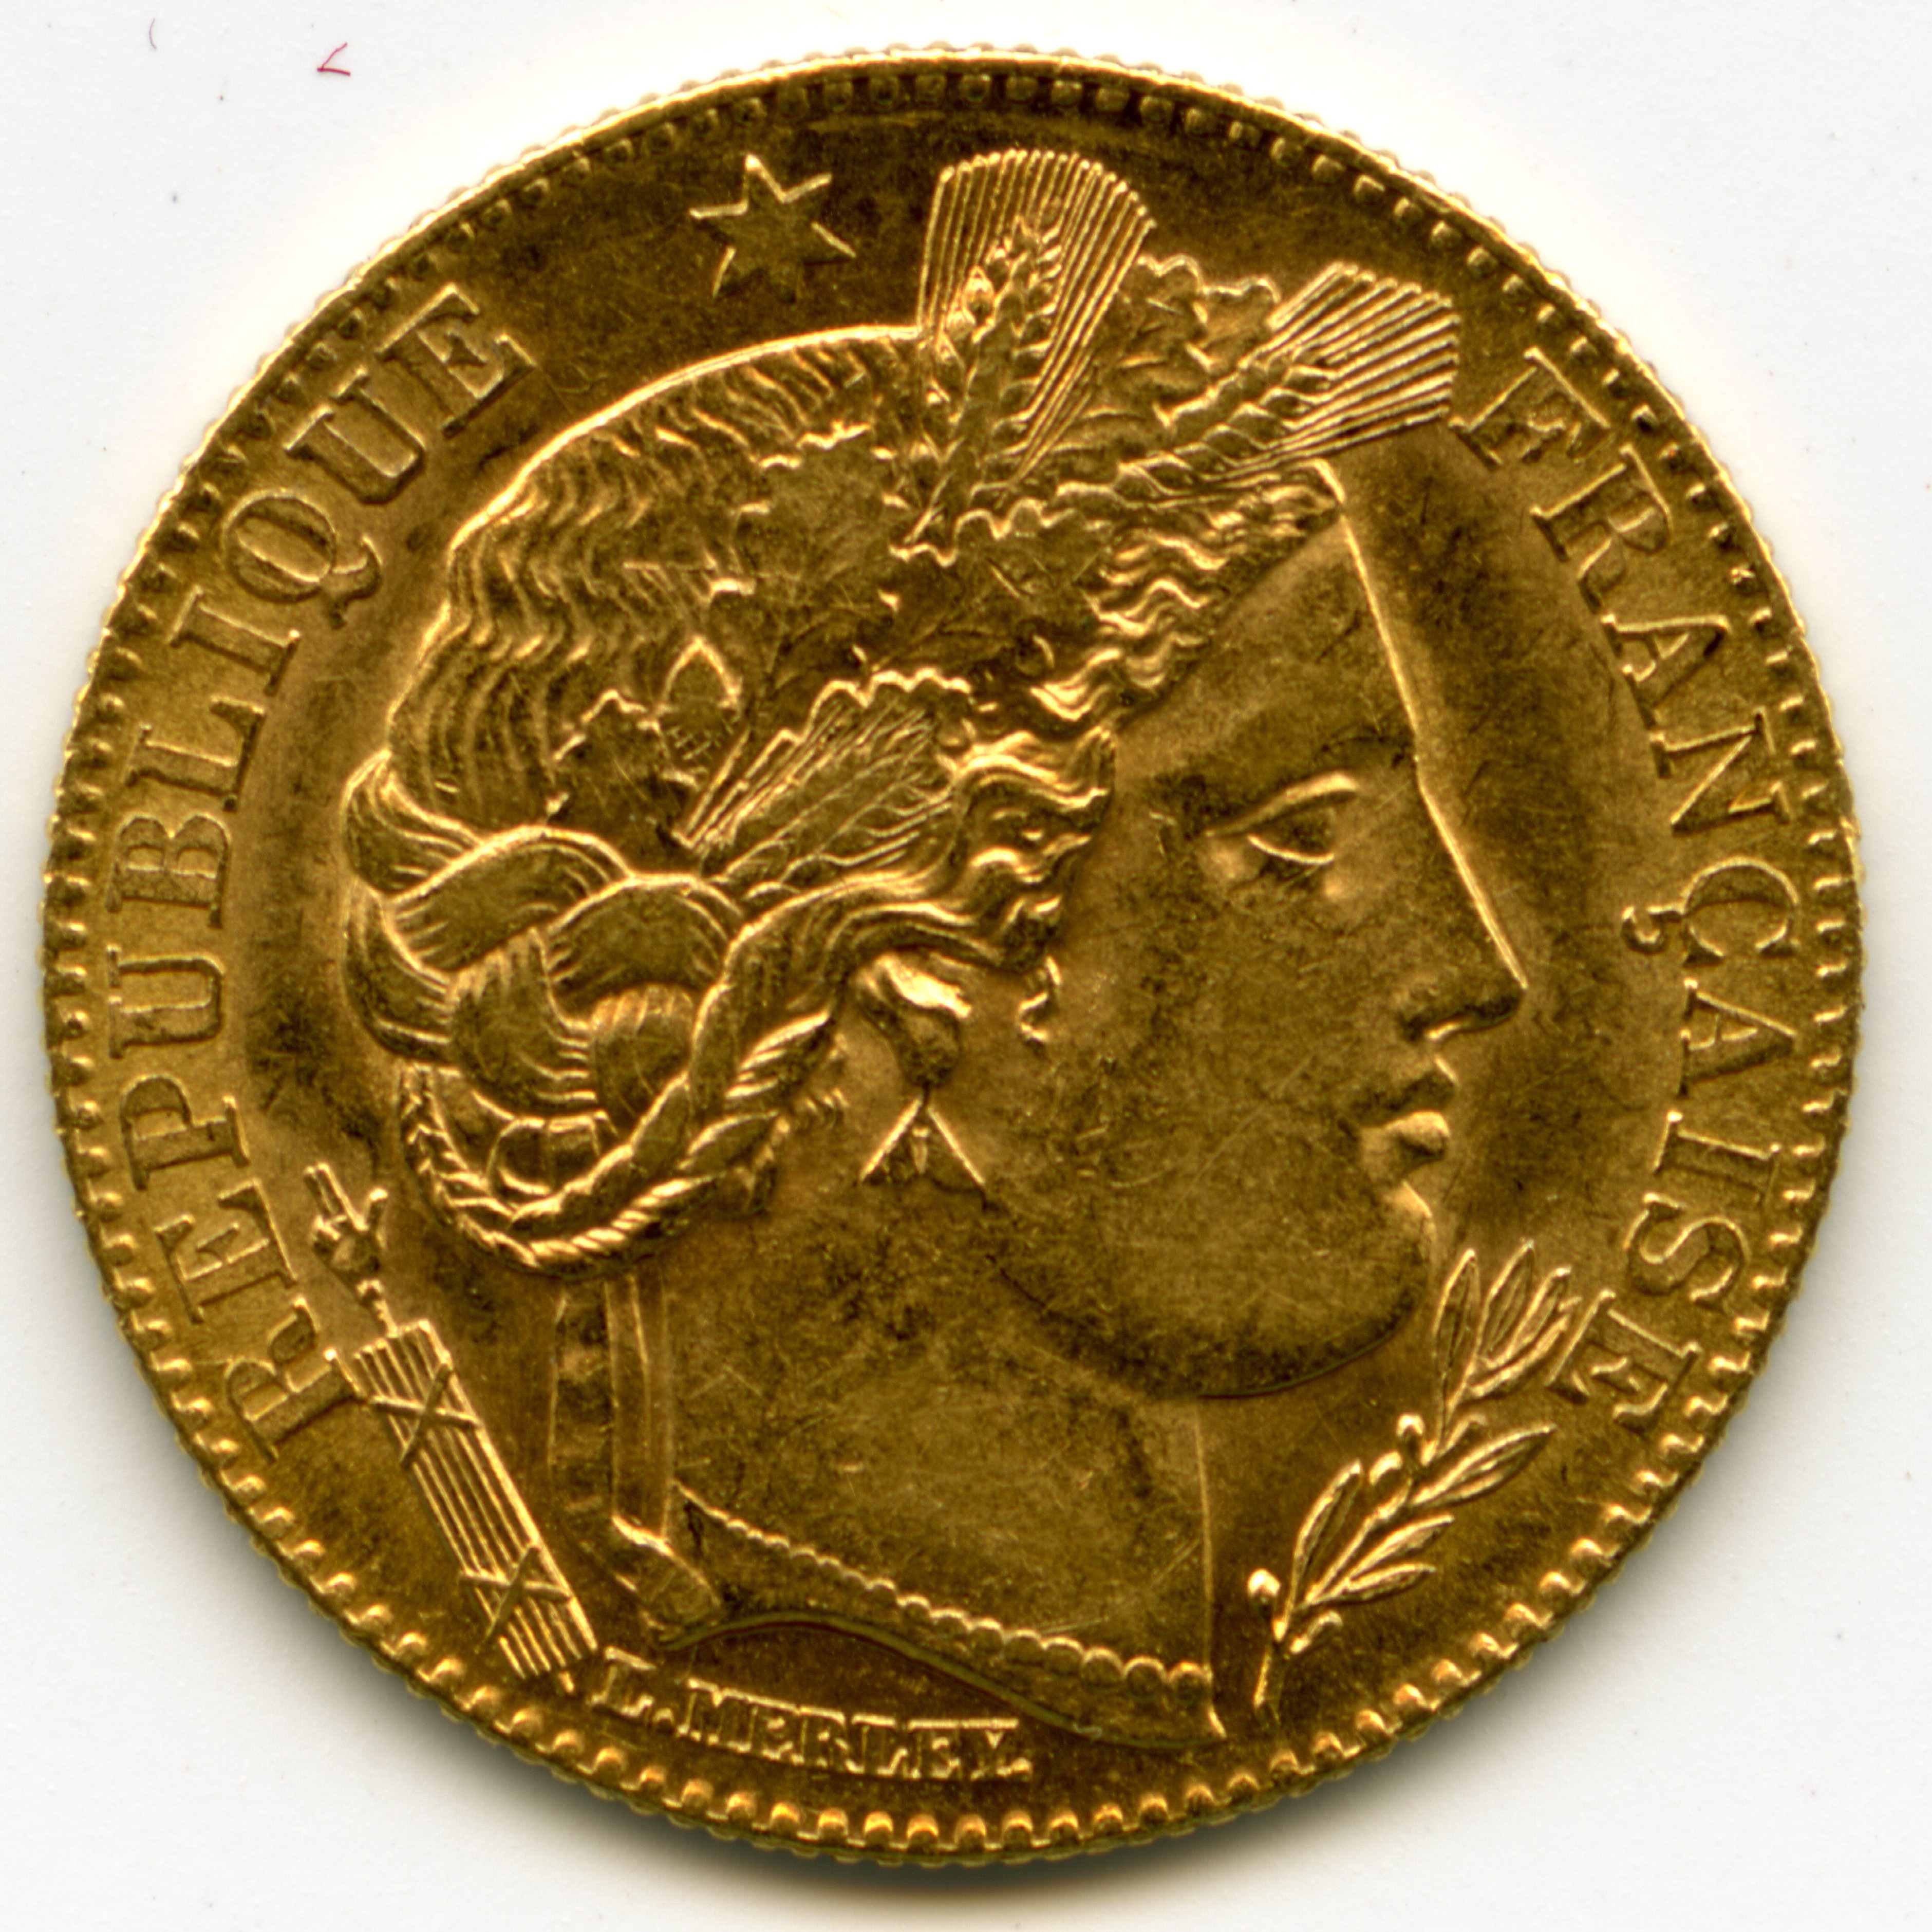 10 Francs - Cérès - 1899 A avers